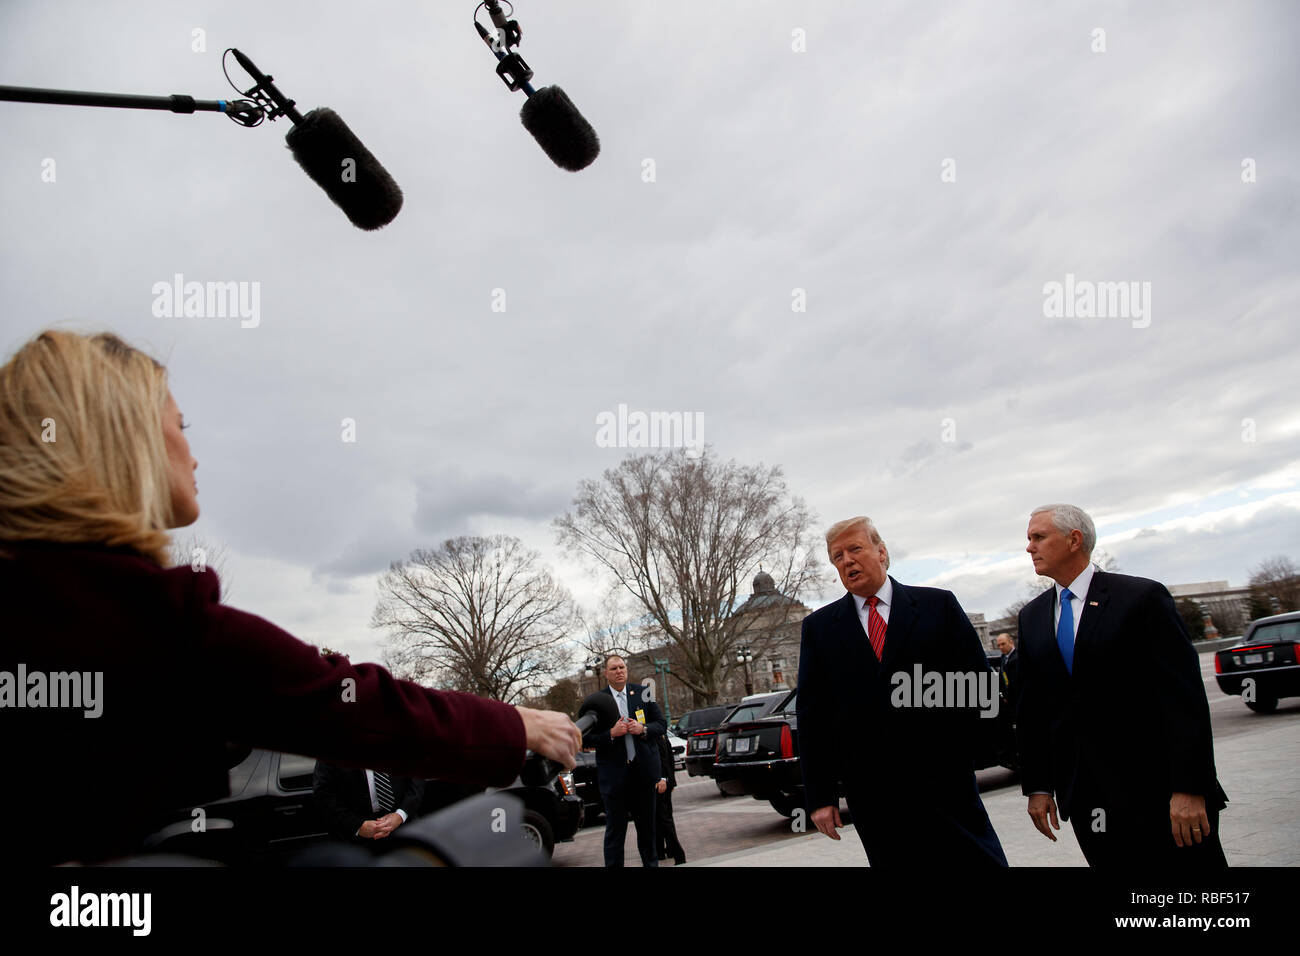 (190109) -- WASHINGTON, gen. 9, 2019 (Xinhua) -- STATI UNITI Presidente Donald Trump (2R), accompagnato dal Vice Presidente Mike pence (1R), arriva al Campidoglio per un senato politica repubblicana pranzo in DC di Washington, negli Stati Uniti il 9 gennaio, 2019. (Xinhua/Ting Shen) Foto Stock